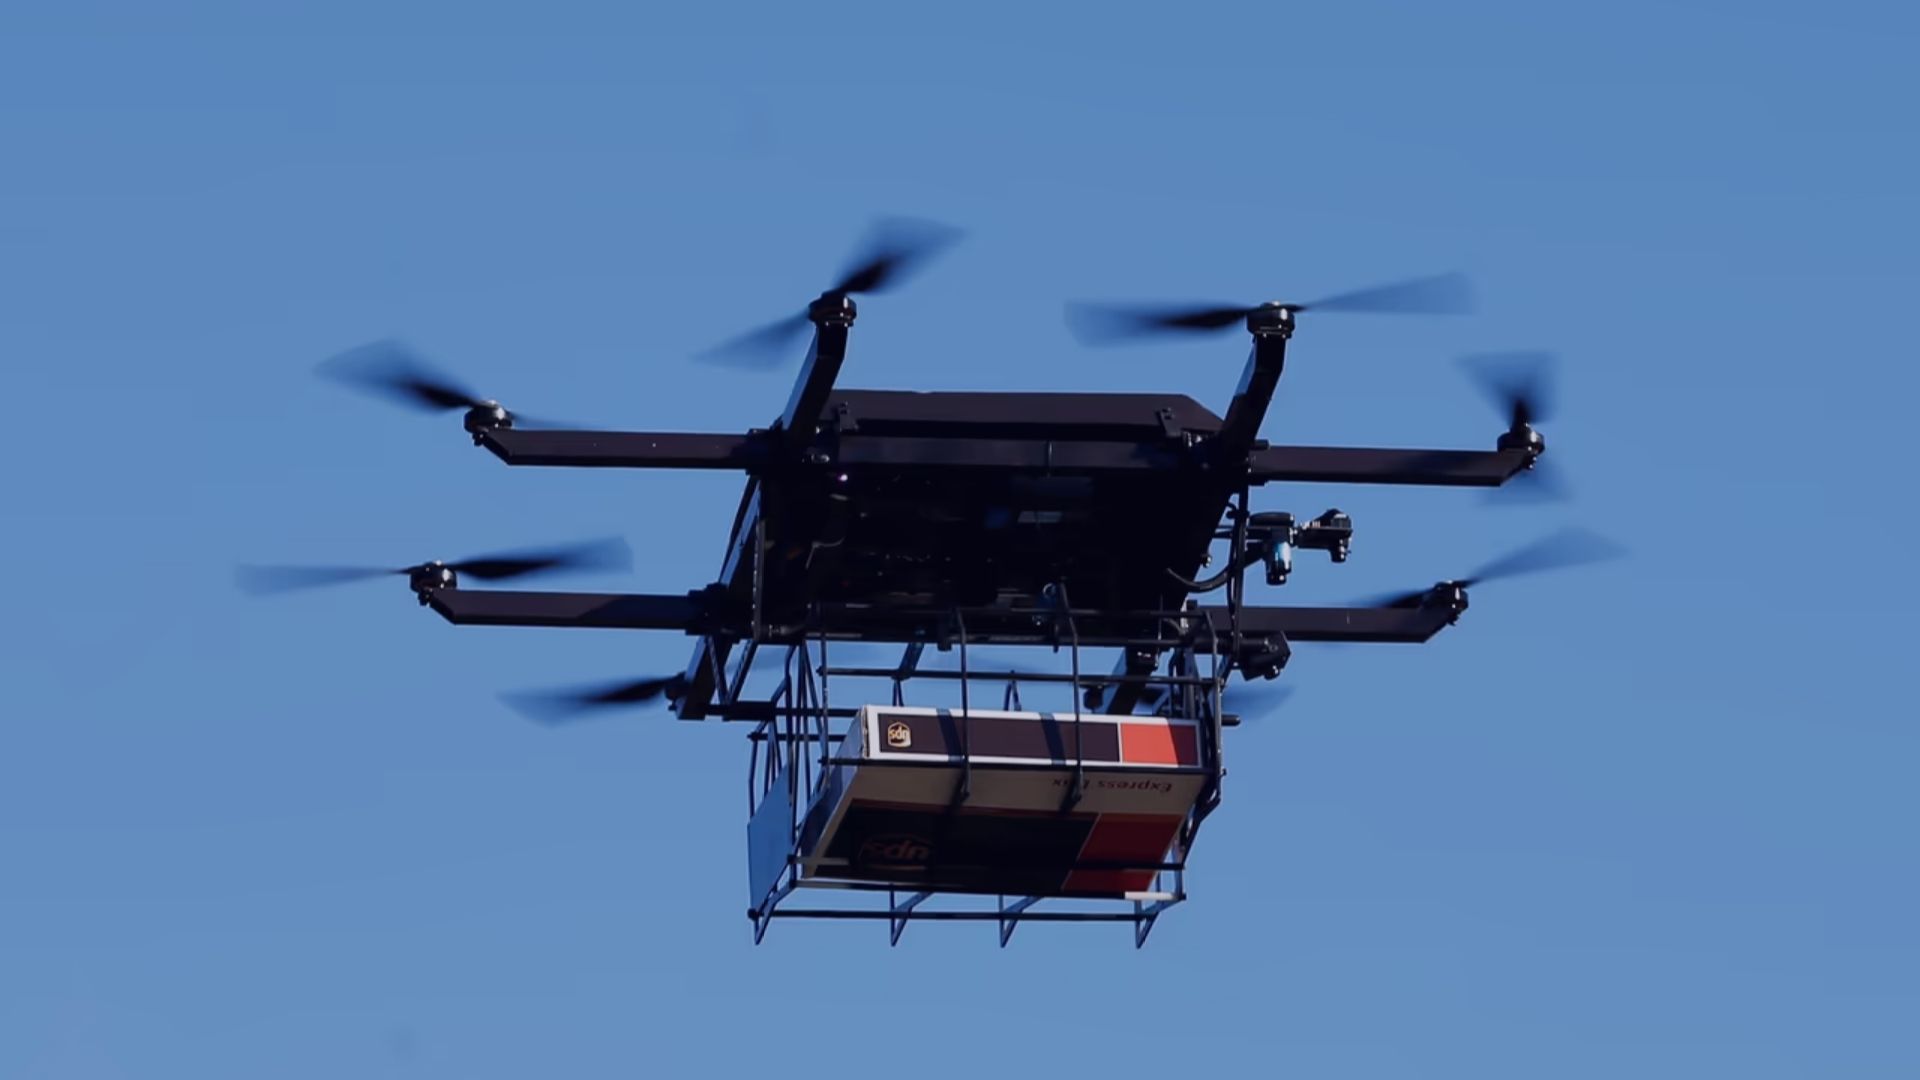 Multirotor Drones transporting package